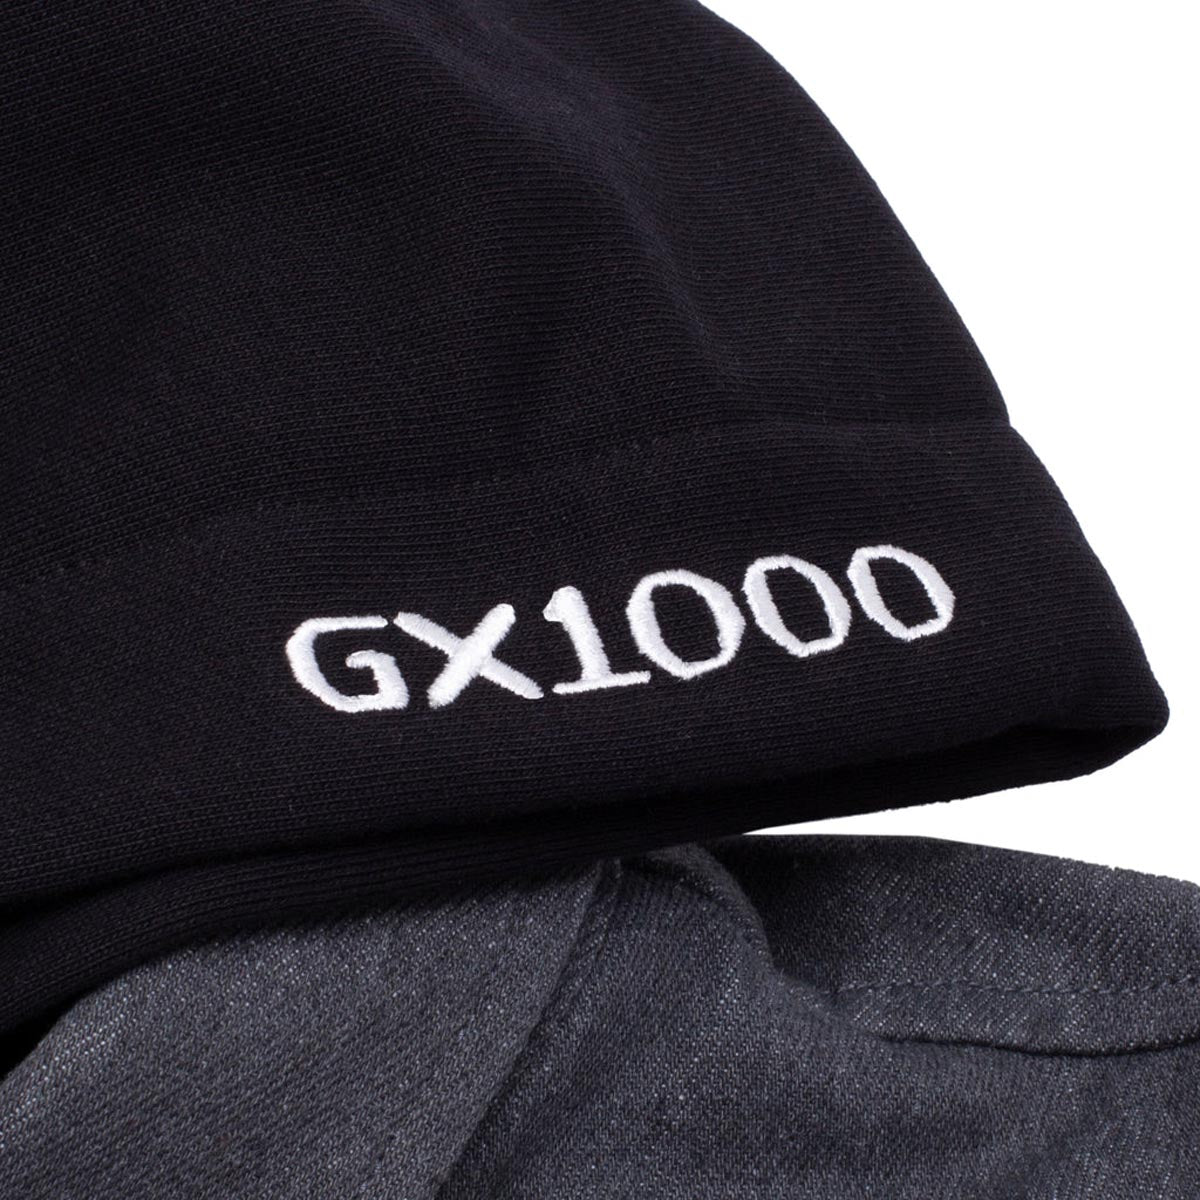 GX1000 Denim Hooded Jacket - Washed Black image 3